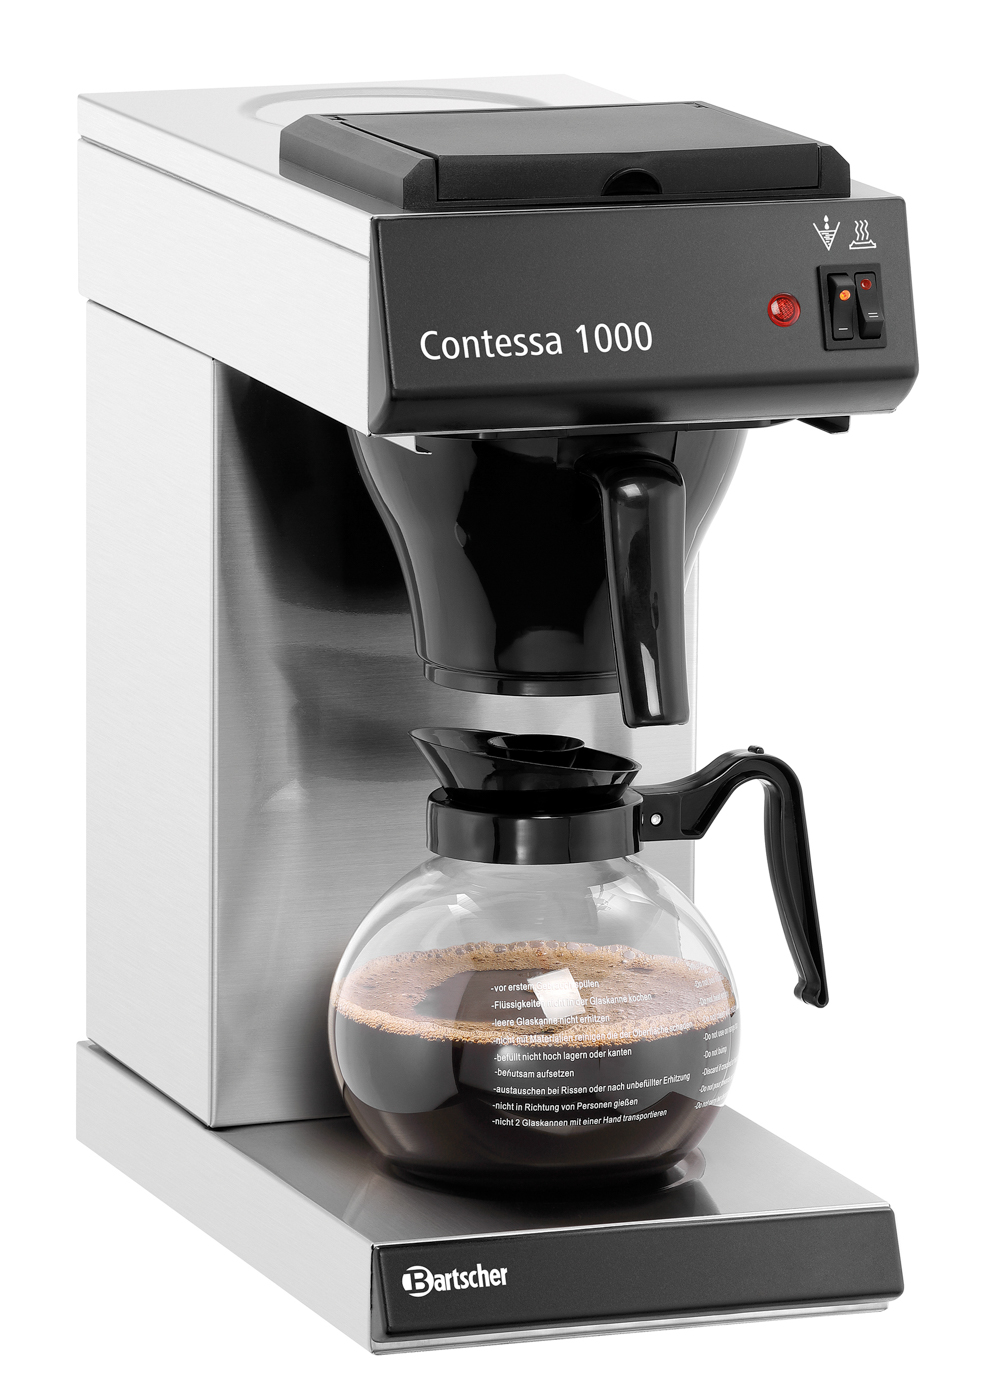 Bartscher Kaffeemaschine Contessa 1000 | Steuerung: Kippschalter | Maße: 21,5 x 38,5 x 460 cm. Gewicht: 6,5 kg